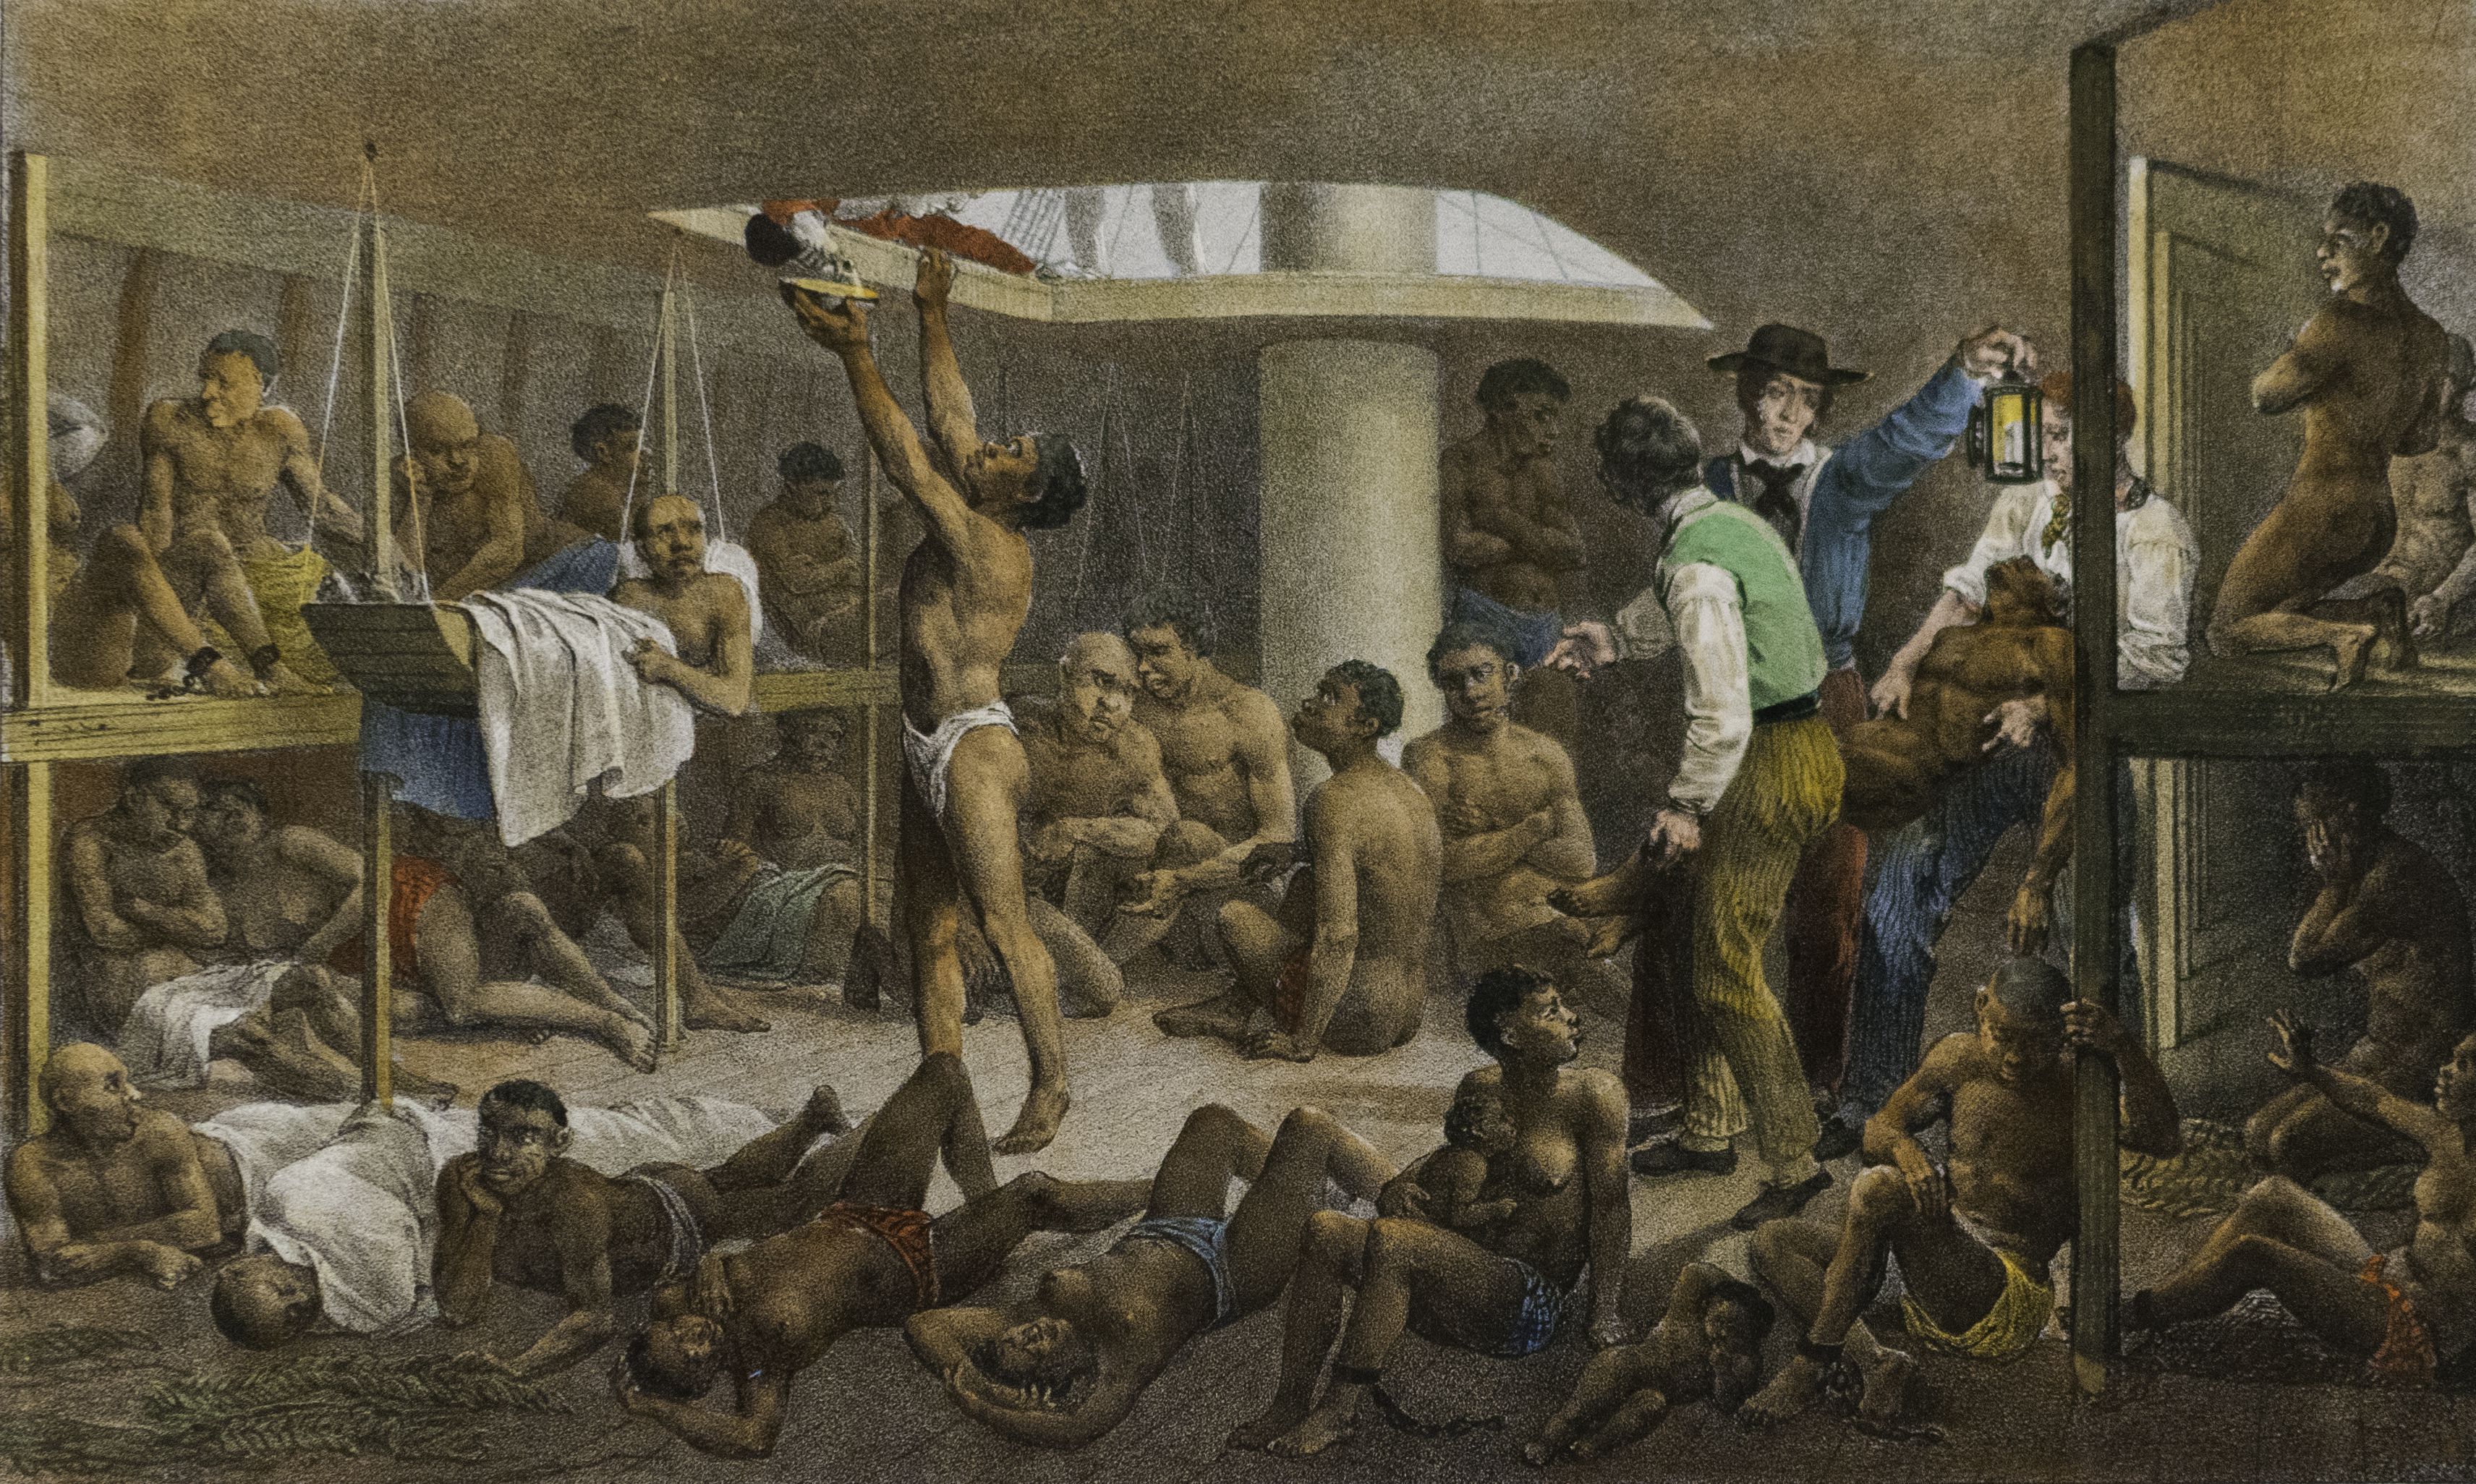 Escravidão no Brasil - História